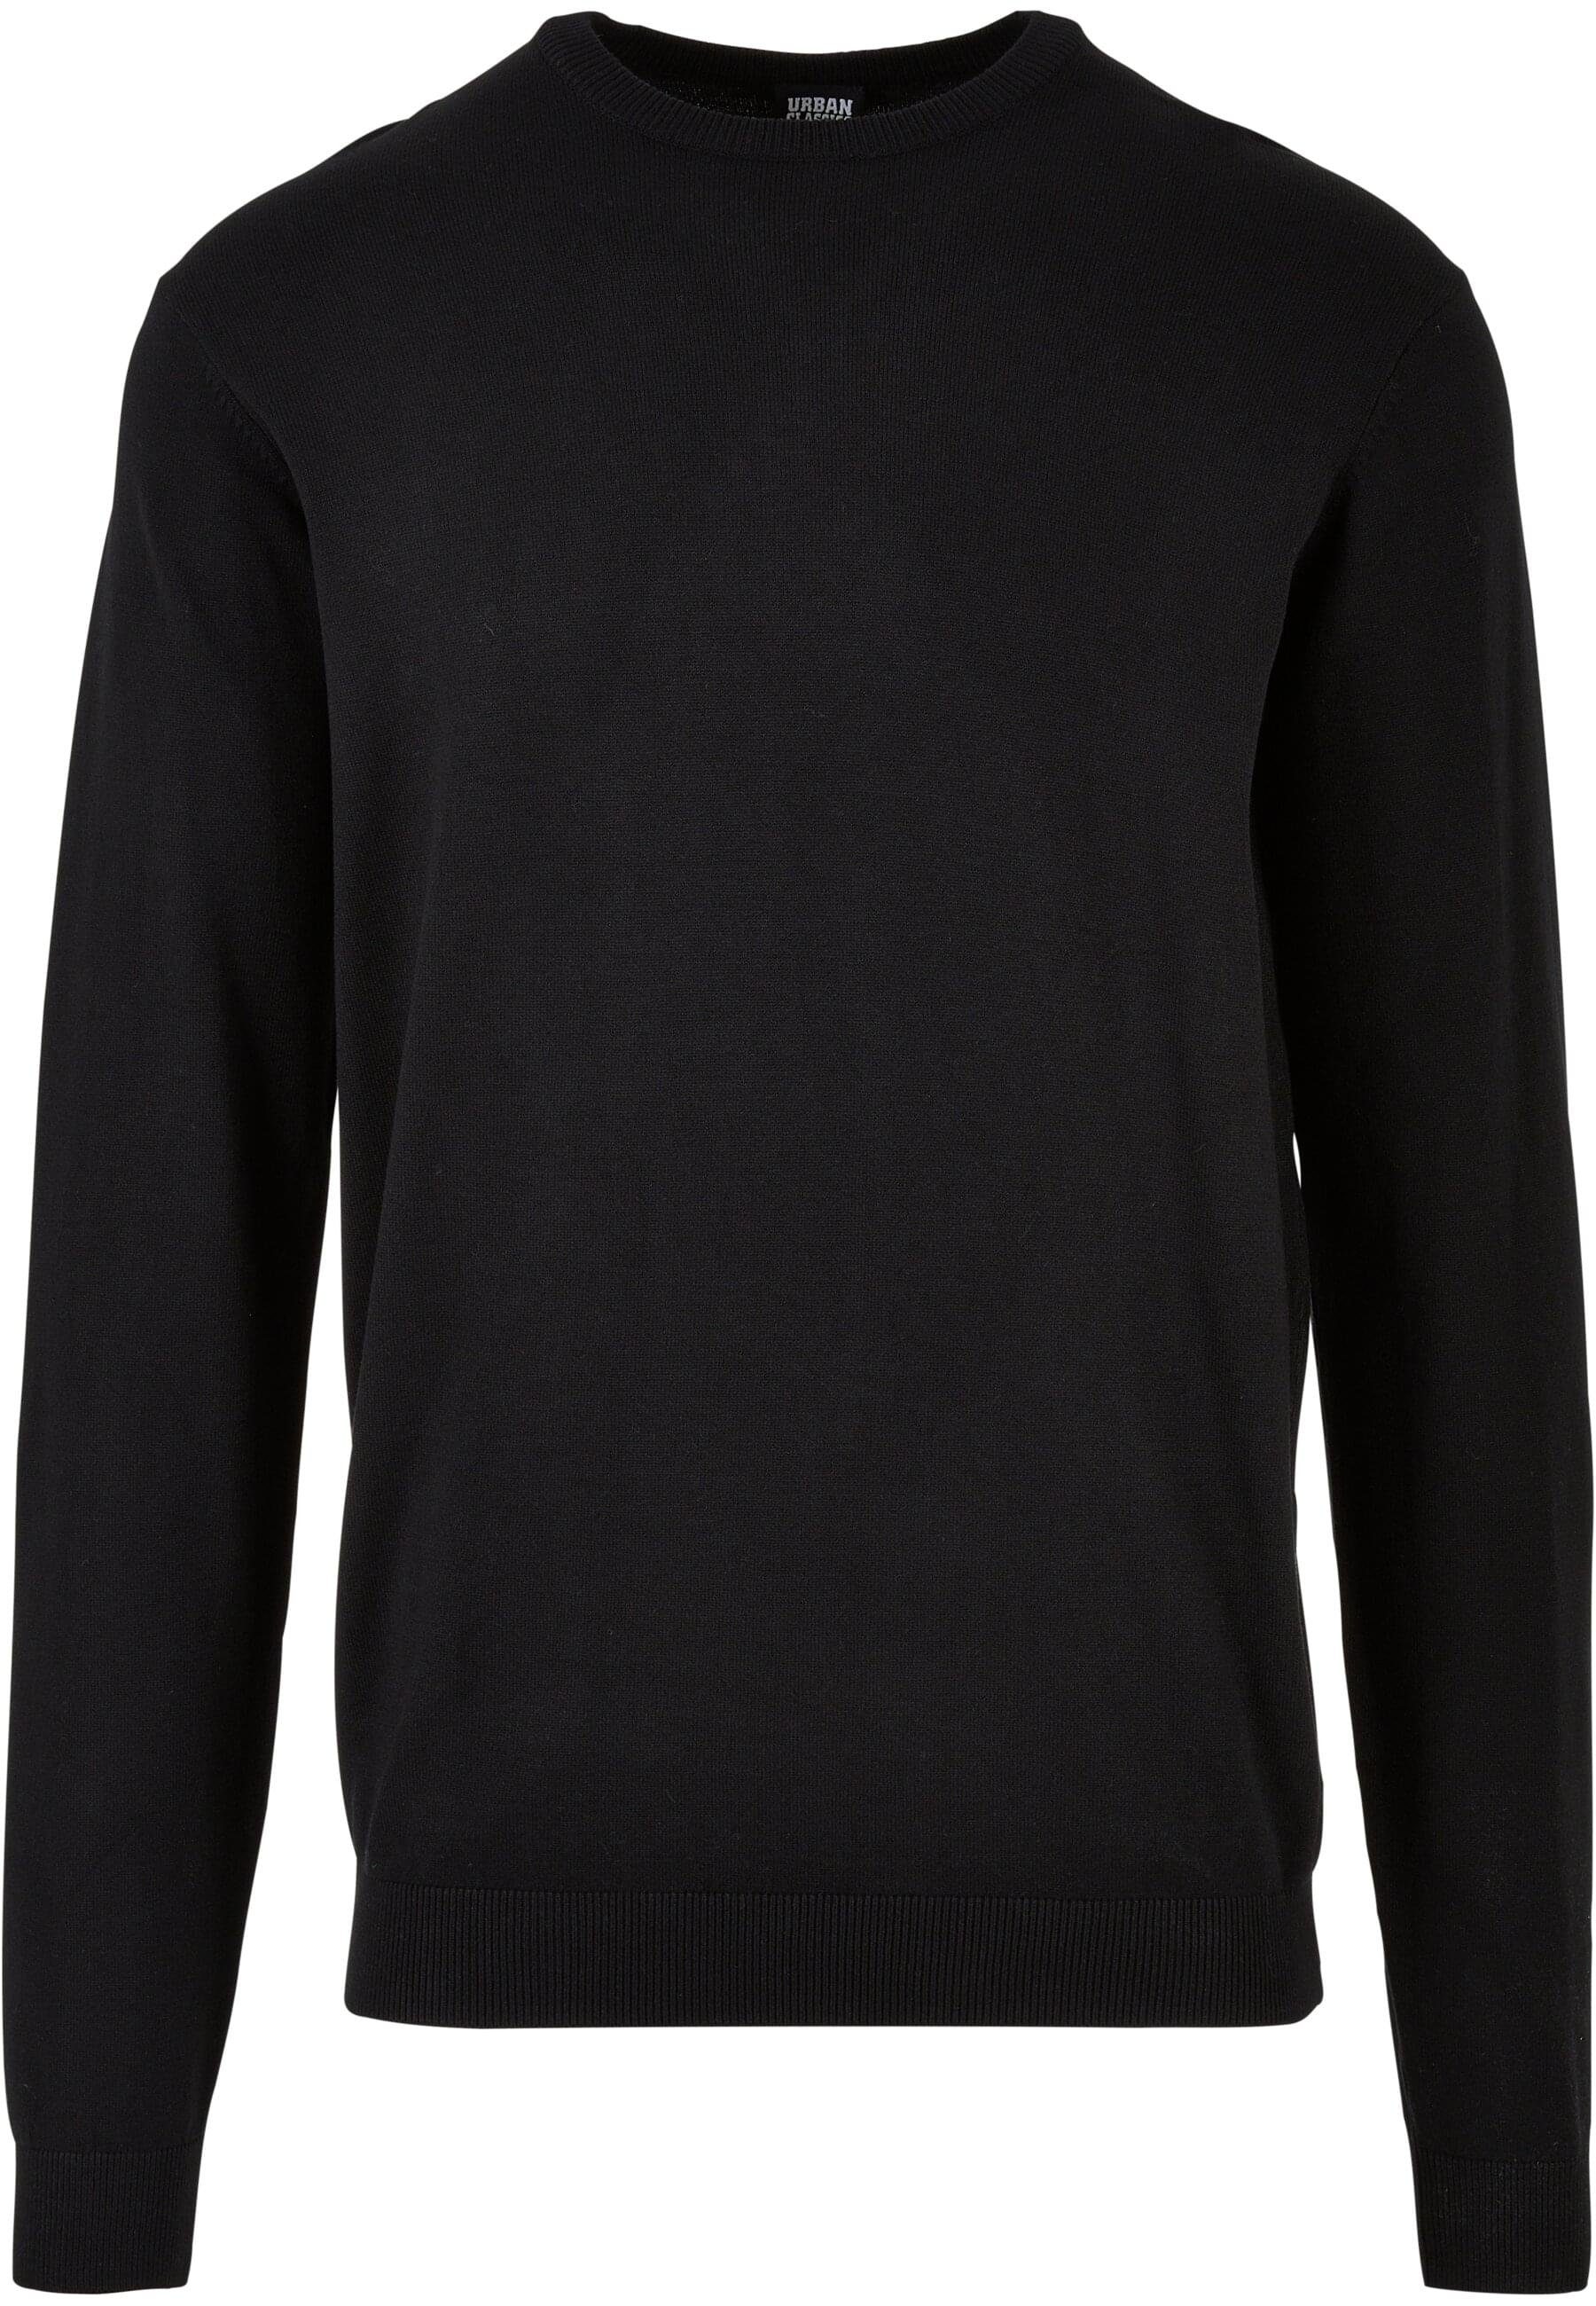 URBAN CLASSICS Rundhalspullover Herren Knitted Crewneck Sweater black | Rundhalspullover